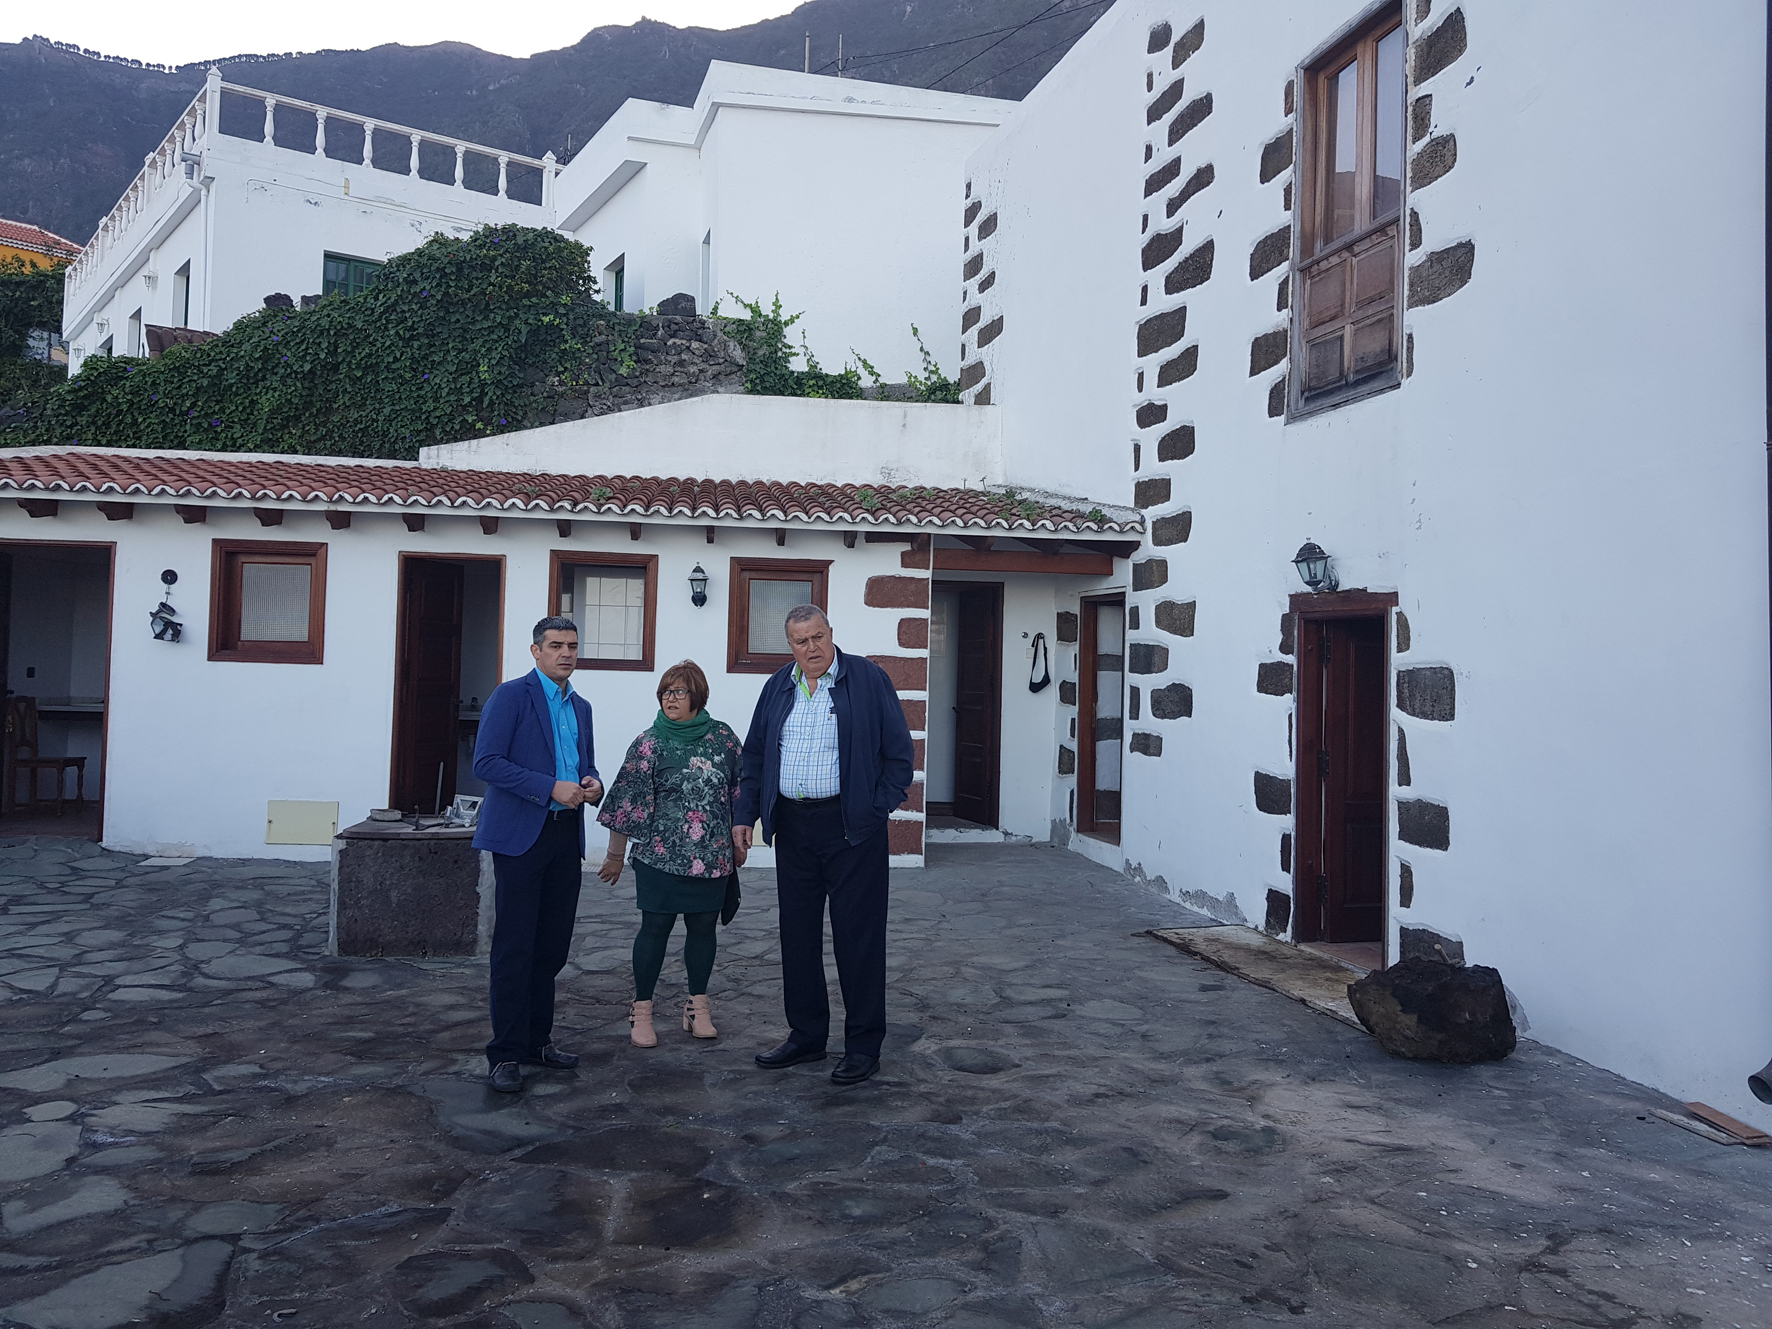 El Gobierno de Canarias destina 54.000 euros a la creación de la Casa Museo de Juan Barbuzano en La Frontera